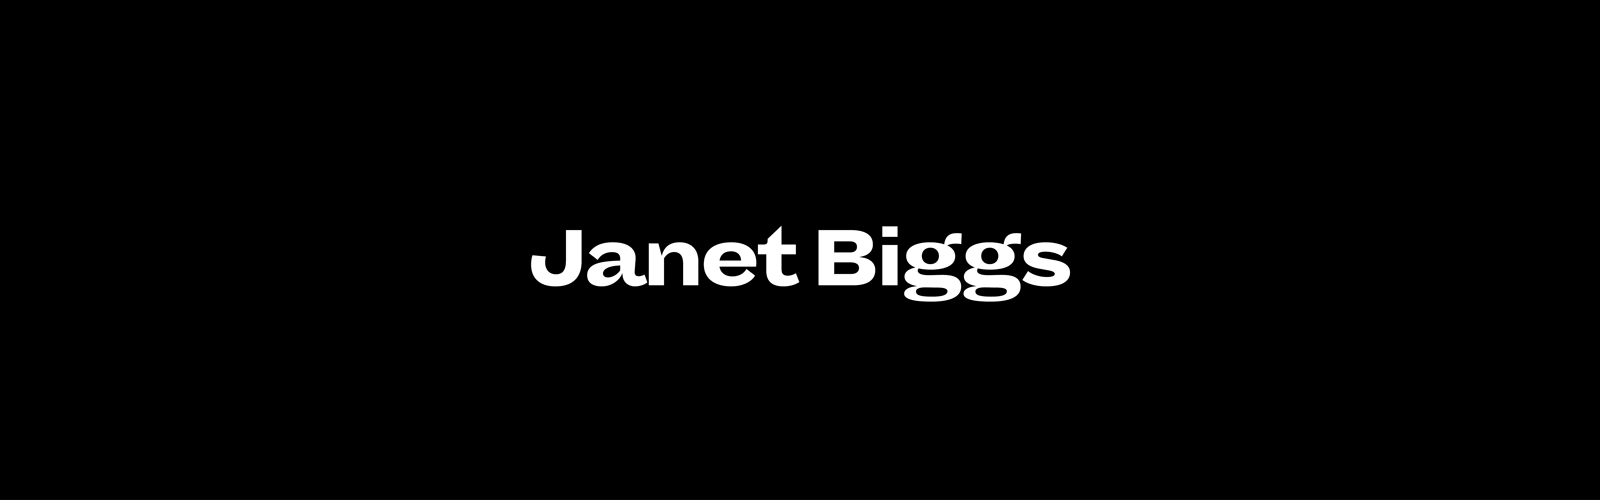 janet biggs